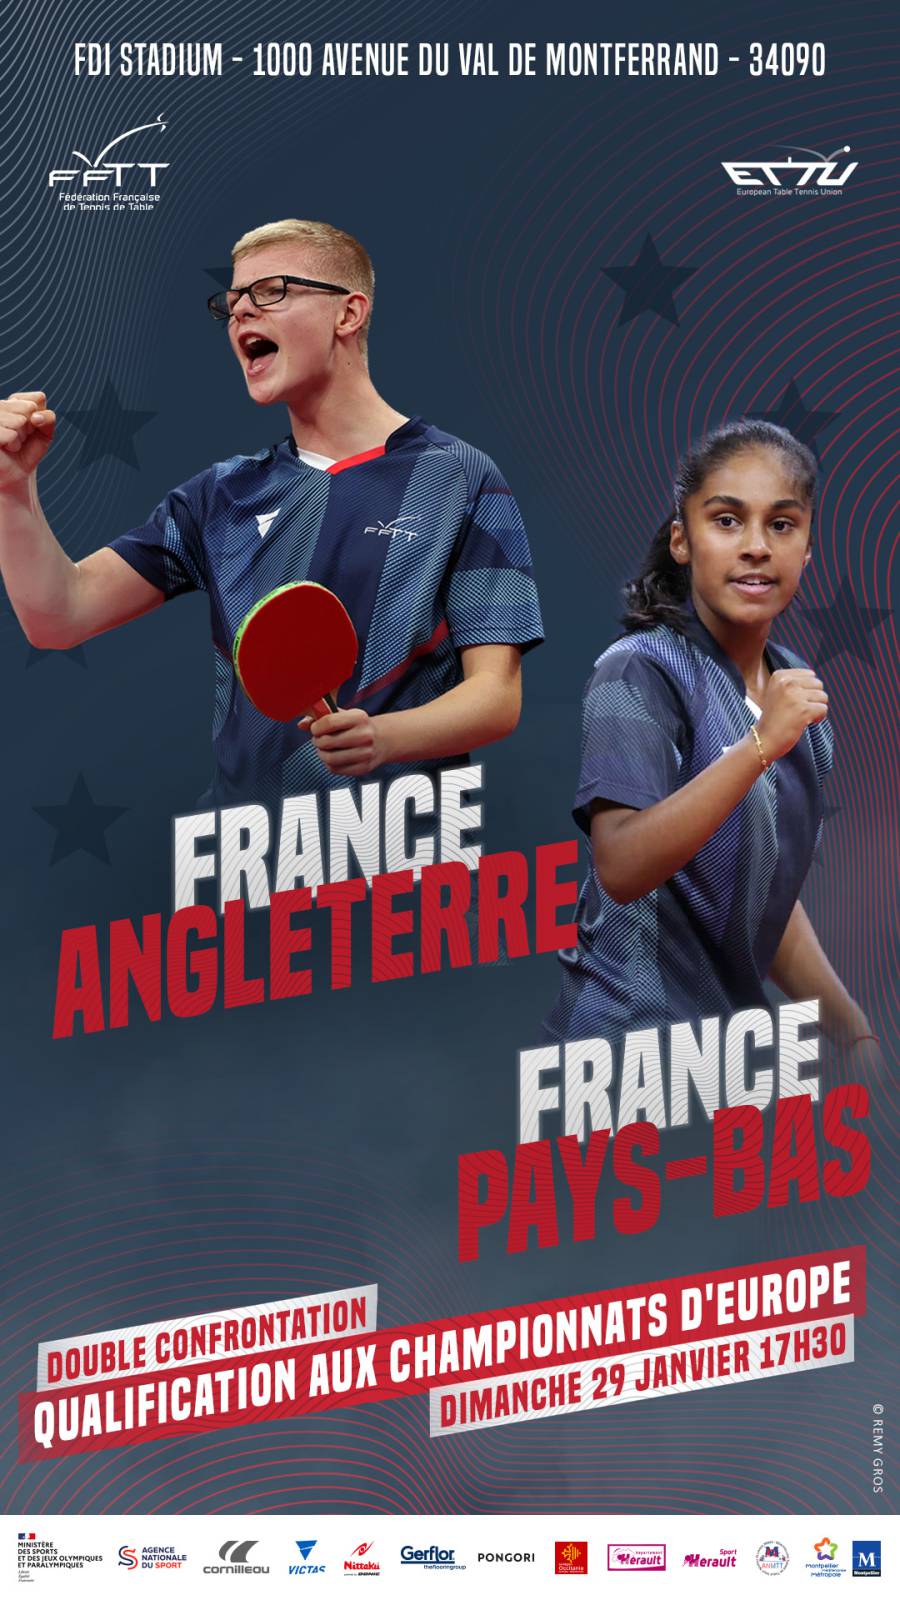 Montpellier - Rencontres internationales de Tennis de Table Dames et Messieurs au FDI Stadium